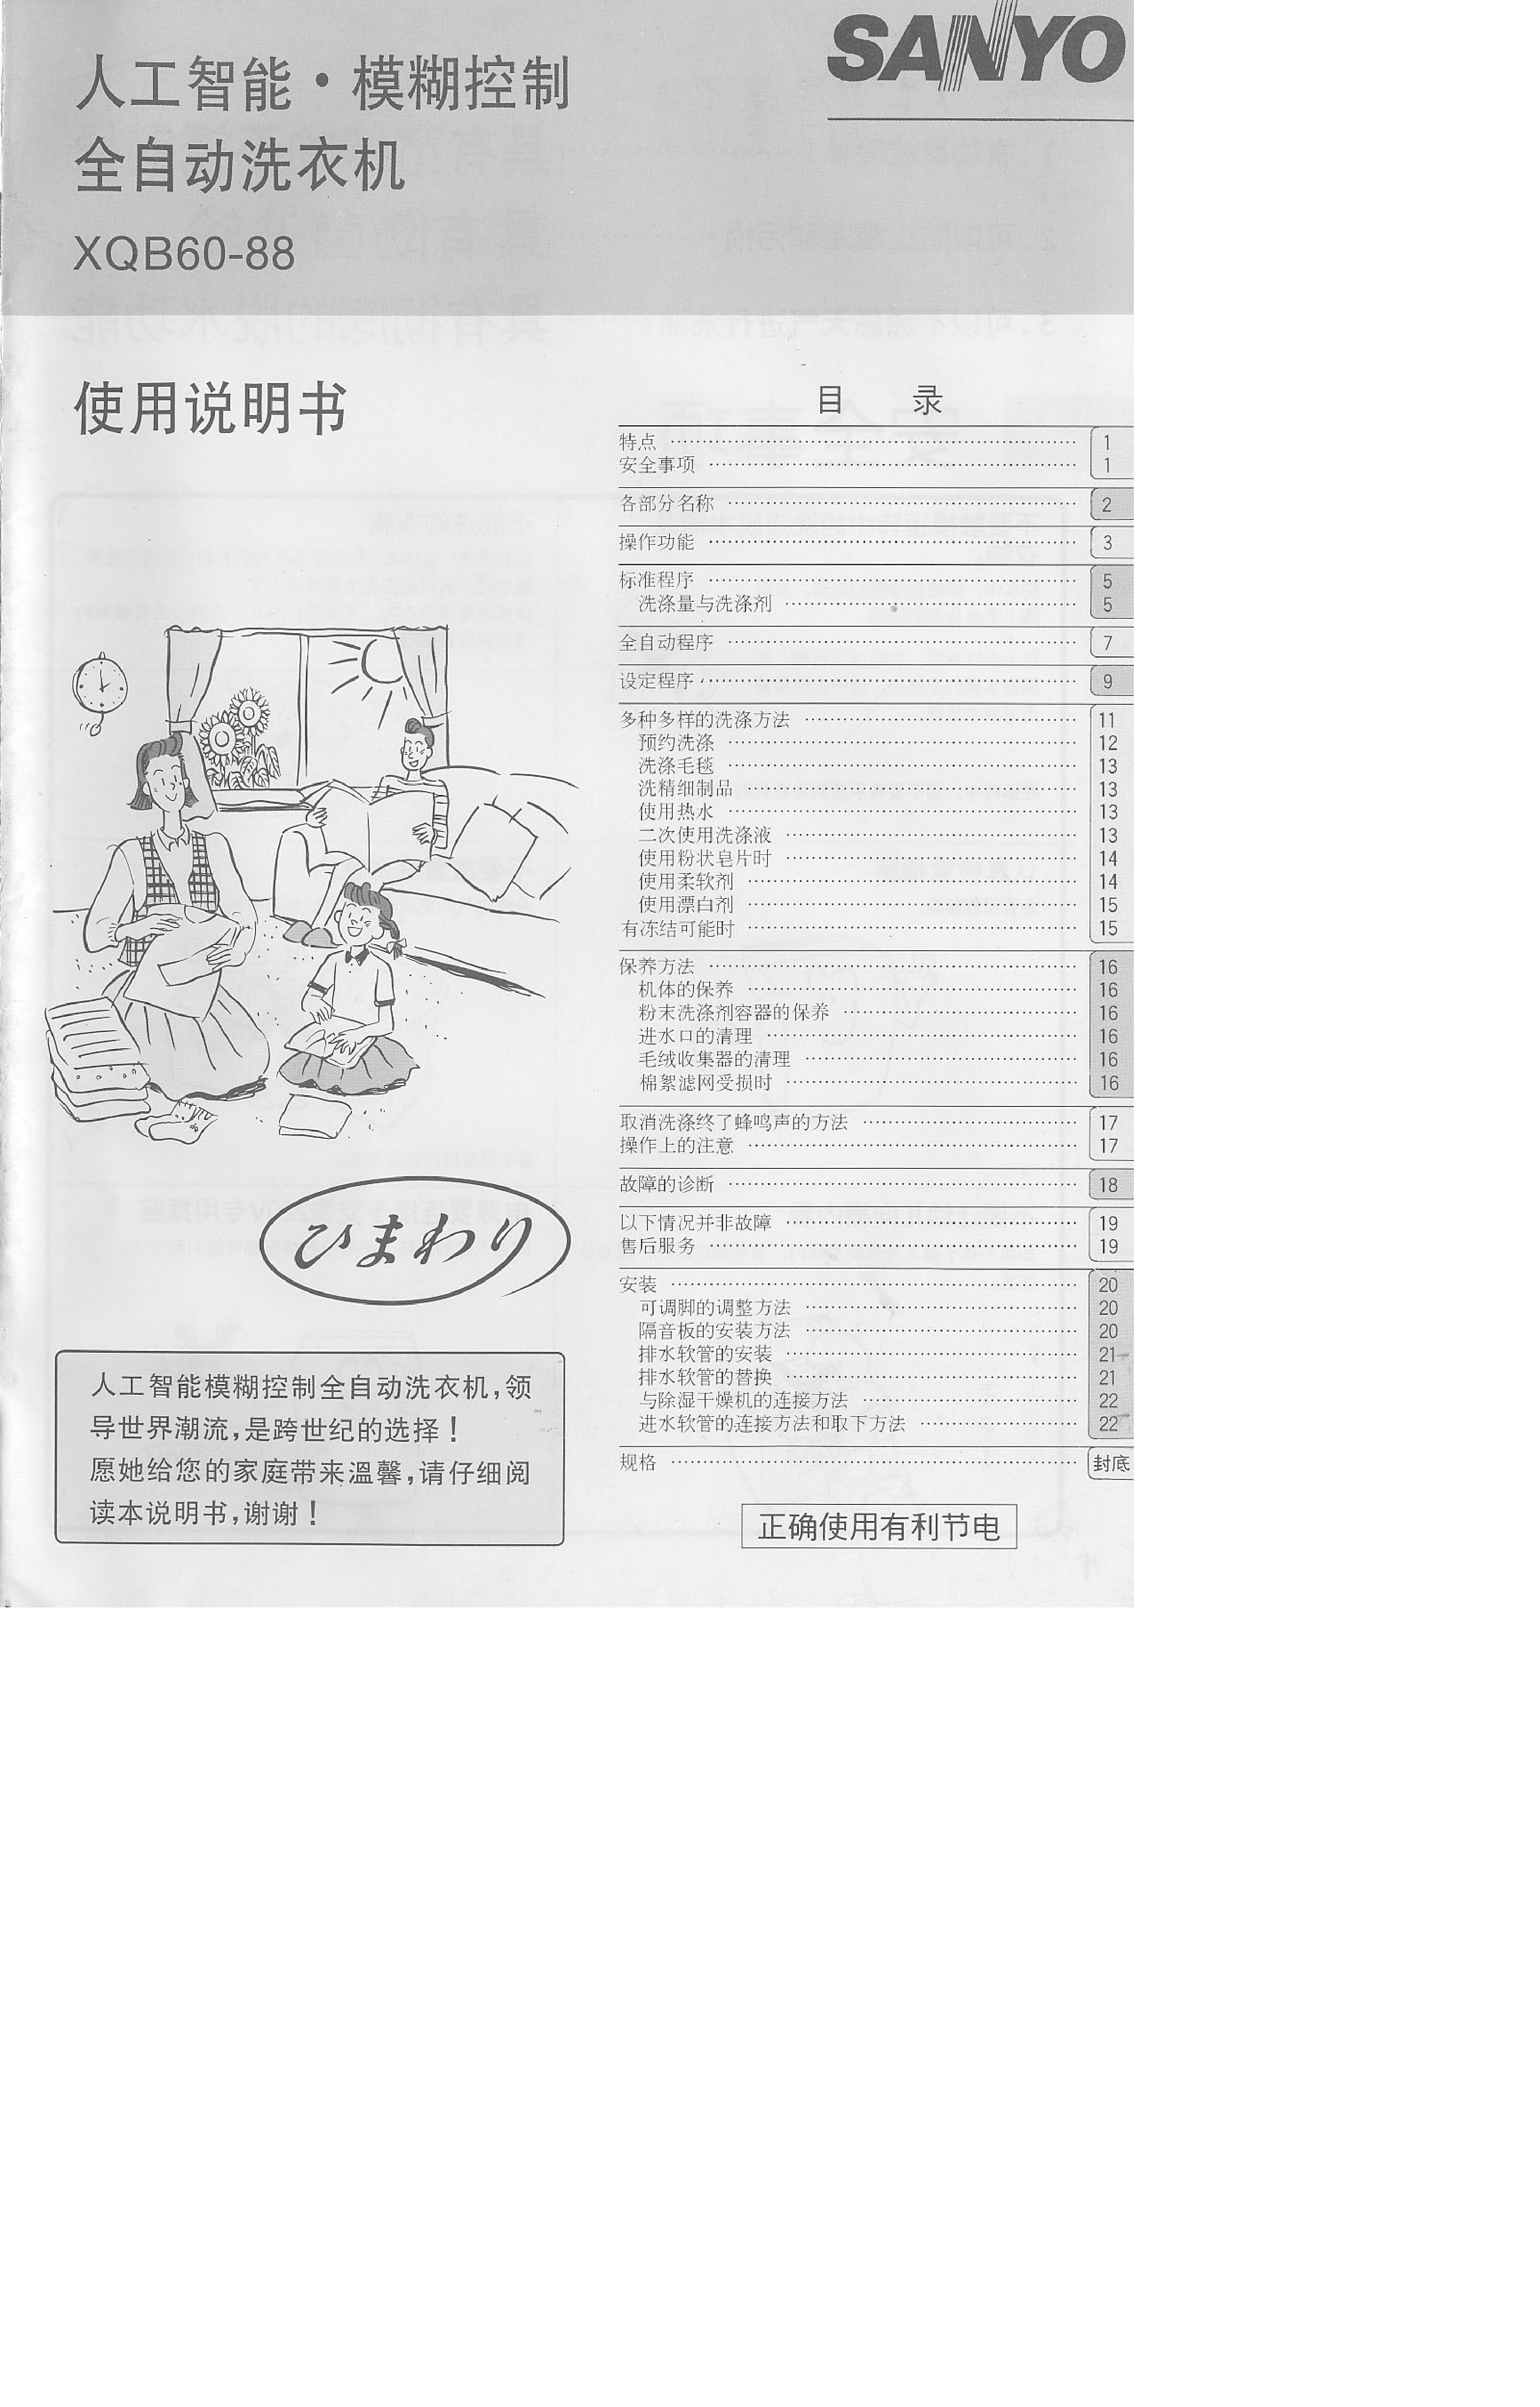 三洋 Sanyo XQB60-88 用户指南 封面